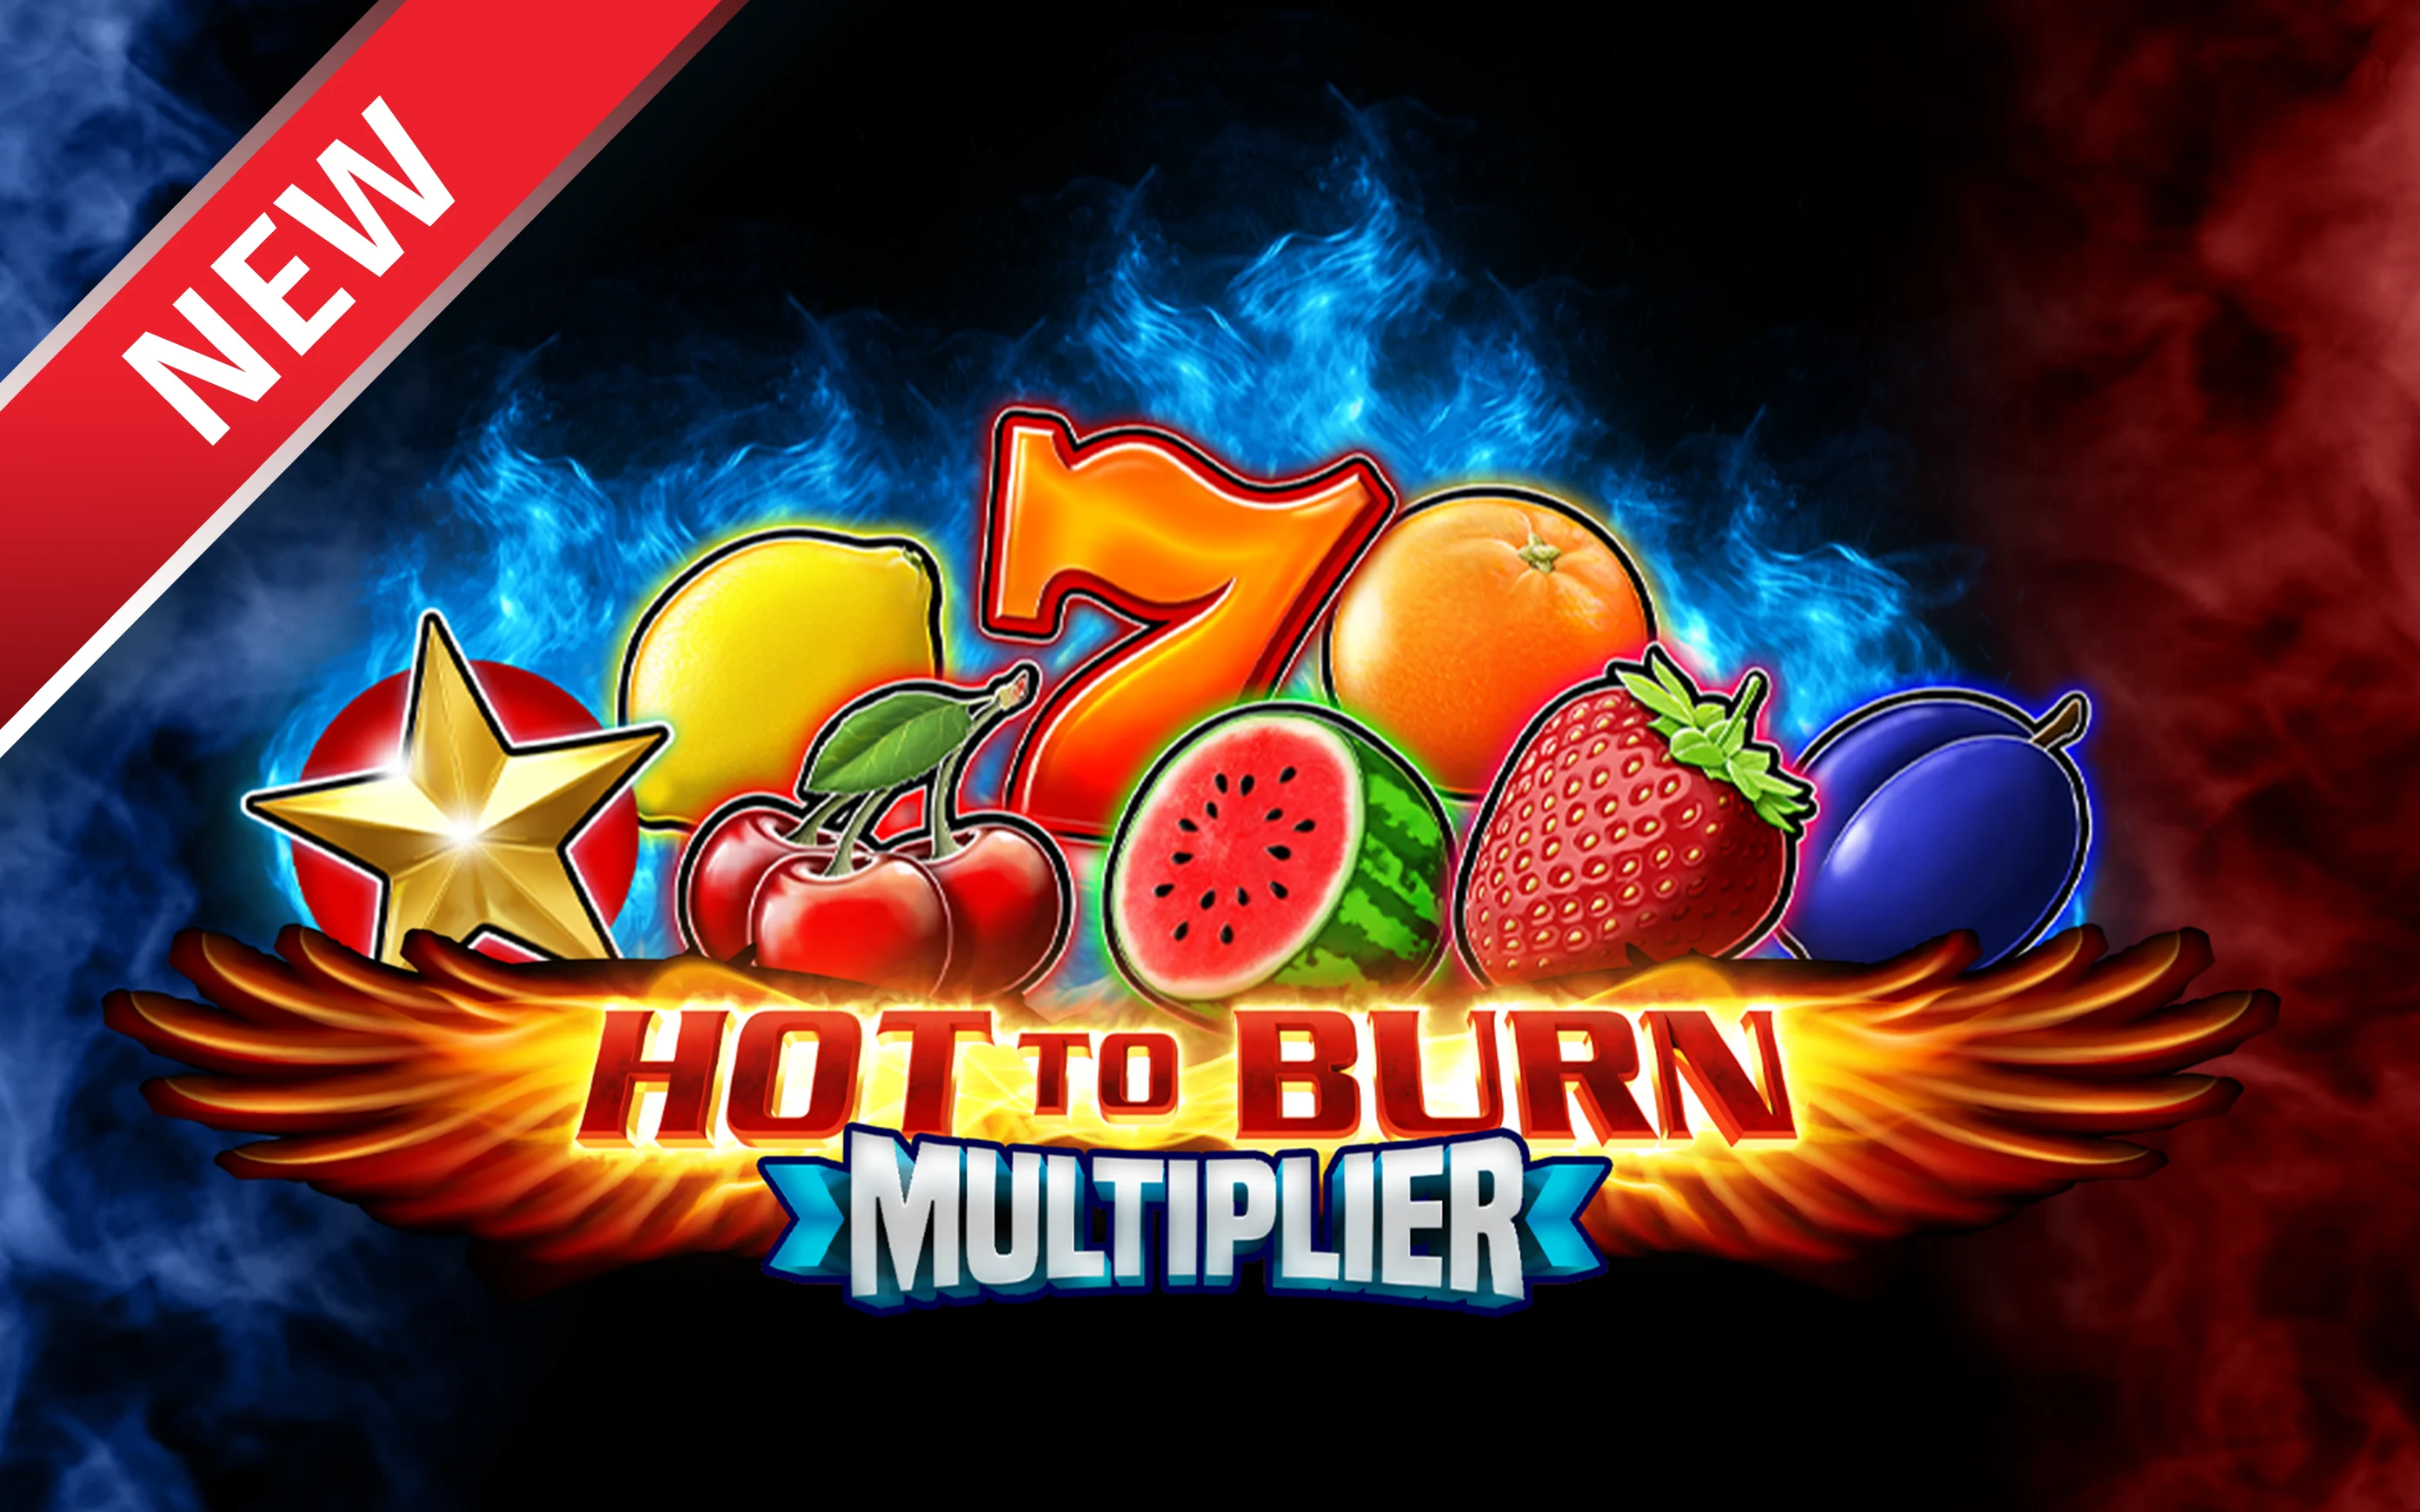 Speel Hot to Burn Multiplier op Starcasino.be online casino